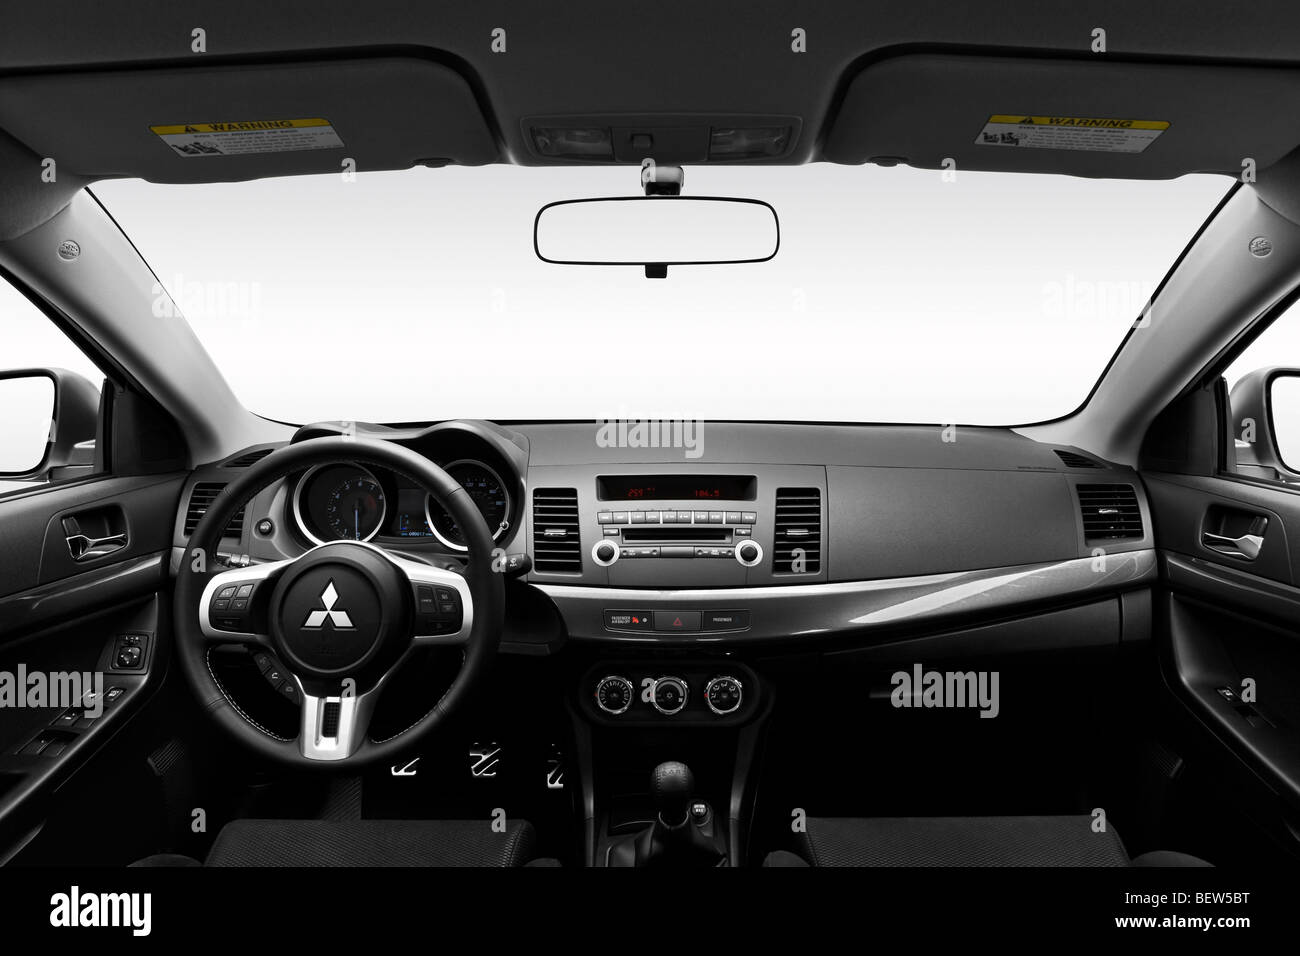 2010 Mitsubishi Lancer Evolution en blanc - planche de bord, console centrale, le levier de vitesses voir Banque D'Images